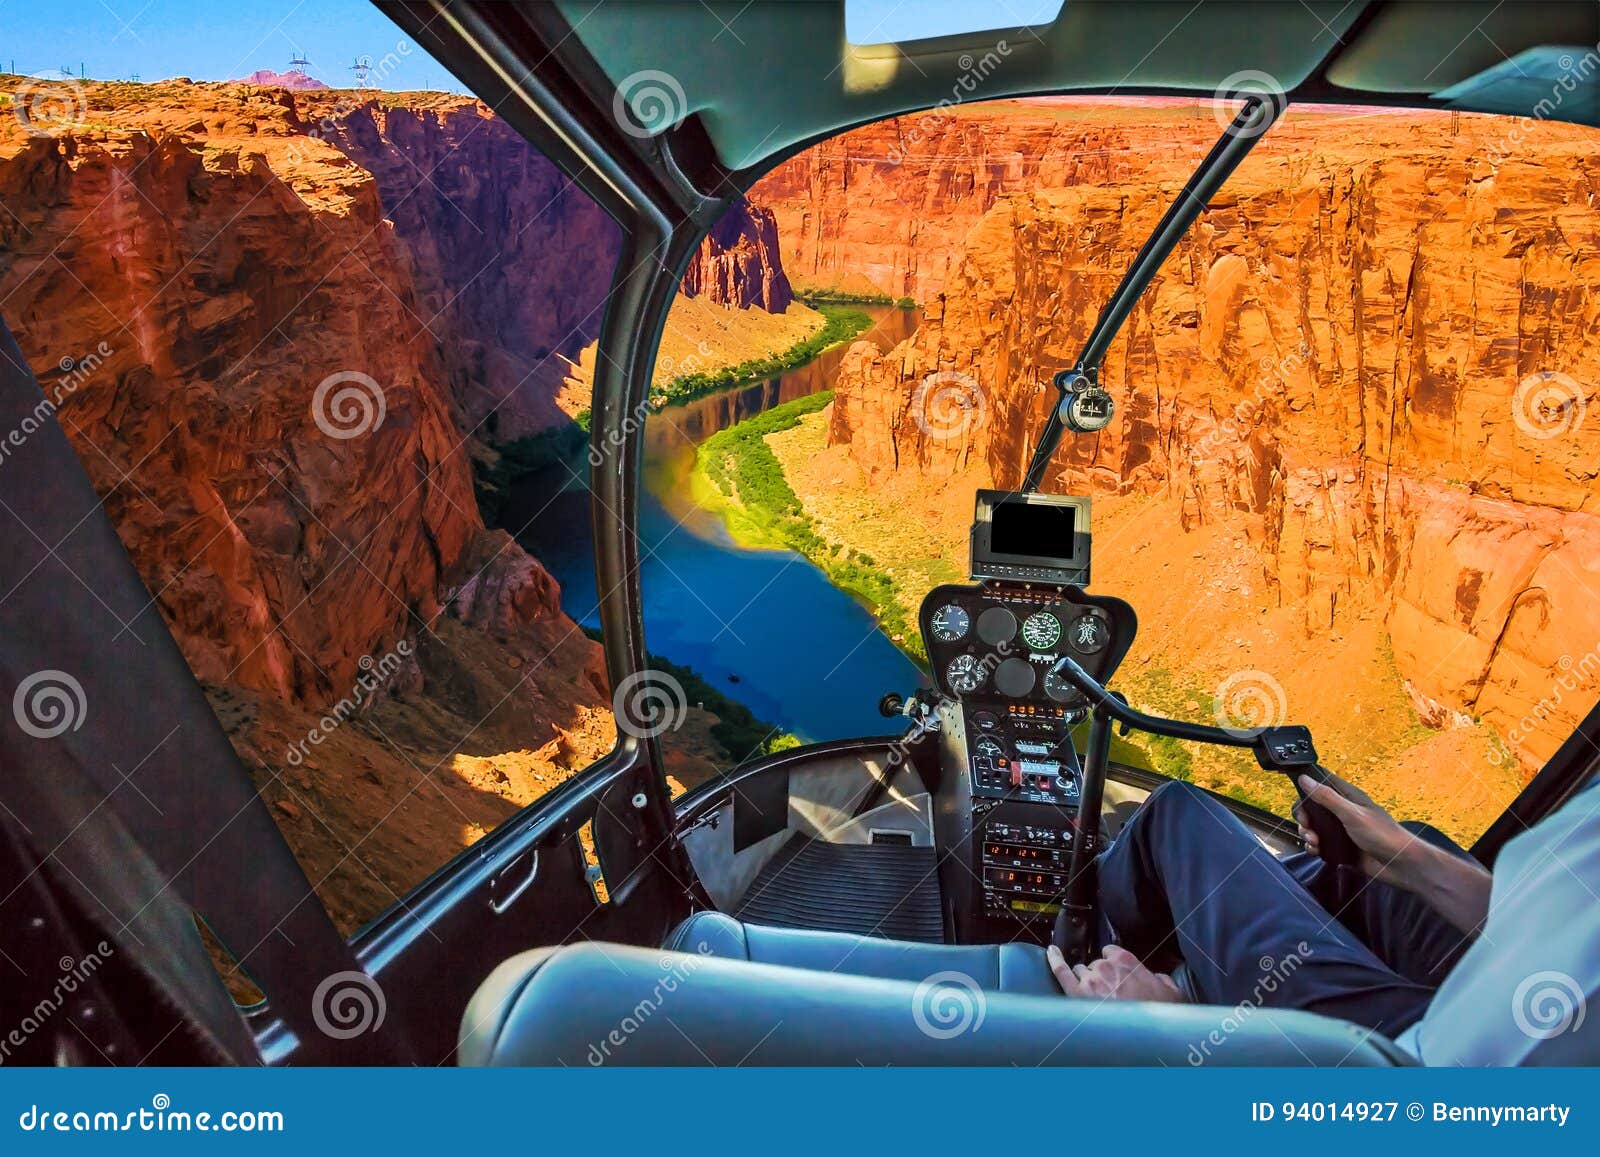 Elicottero su Grand Canyon. Cabina di pilotaggio dell'elicottero con il braccio pilota e sezione comandi dentro la cabina sul lago Powell grand Canyon Riserva sul fiume Colorado, cavalcando la frontiera fra l'Utah e l'Arizona U.S.A., America